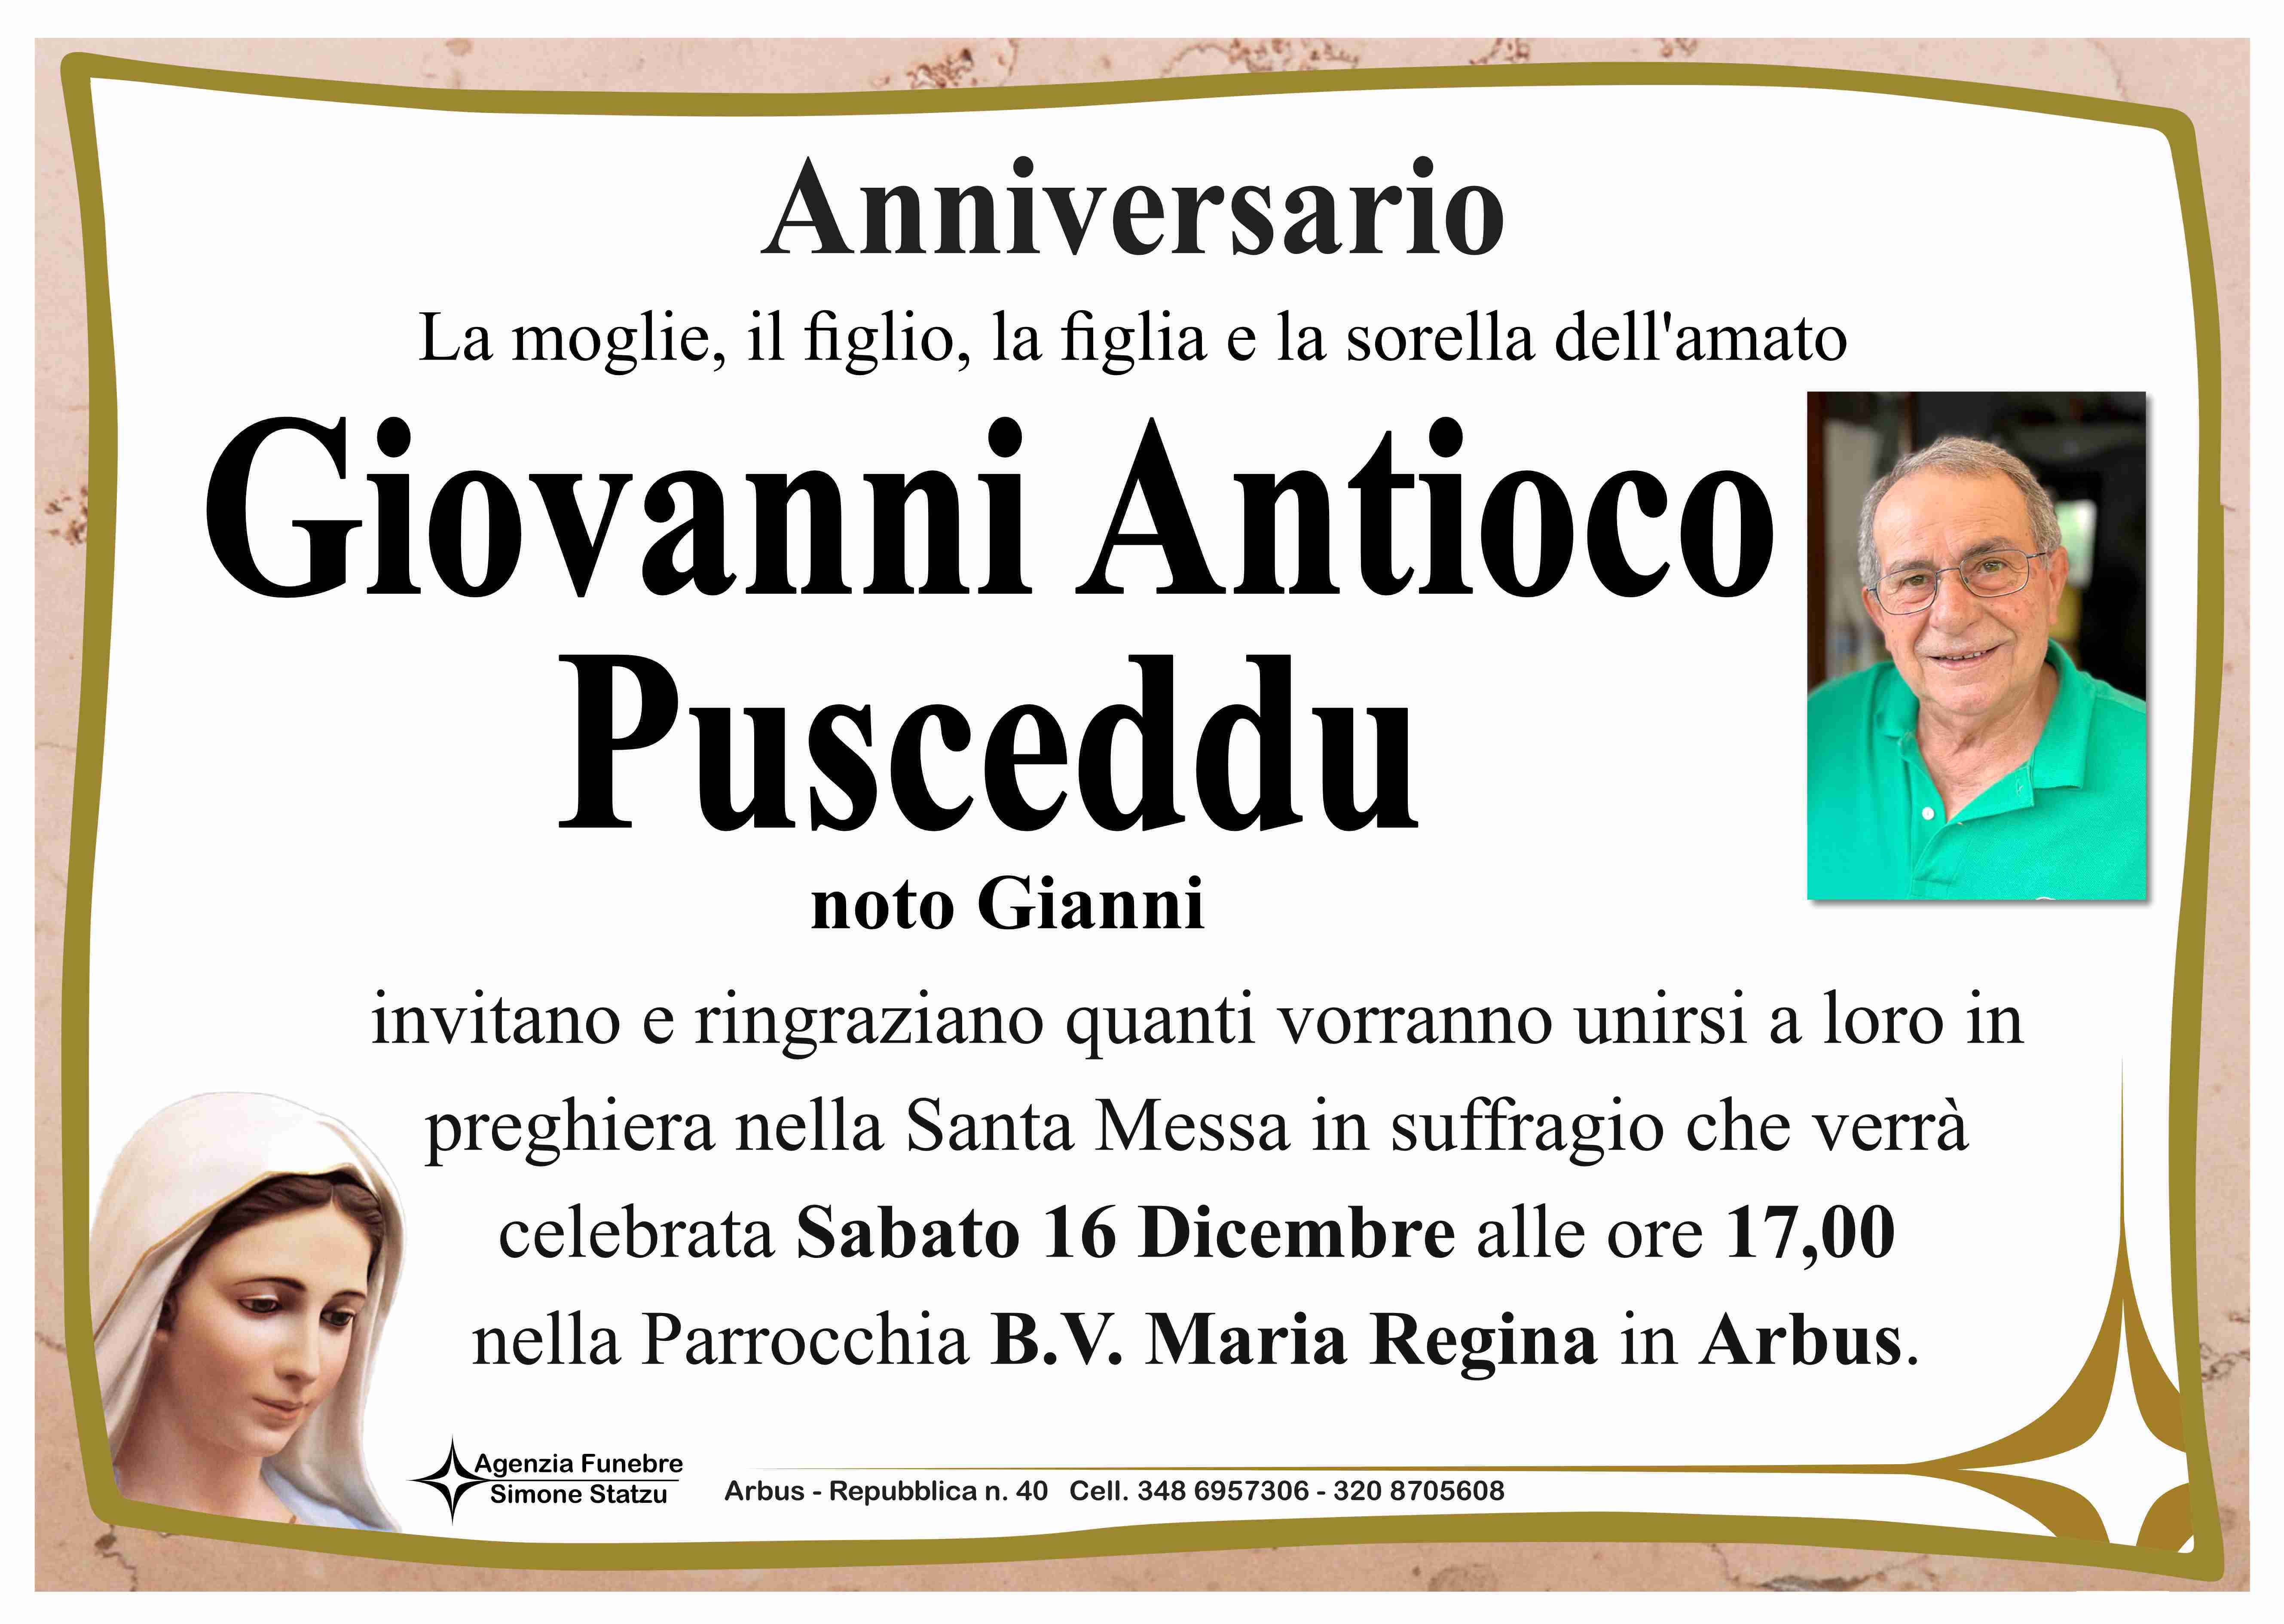 Giovanni Antioco Pusceddu